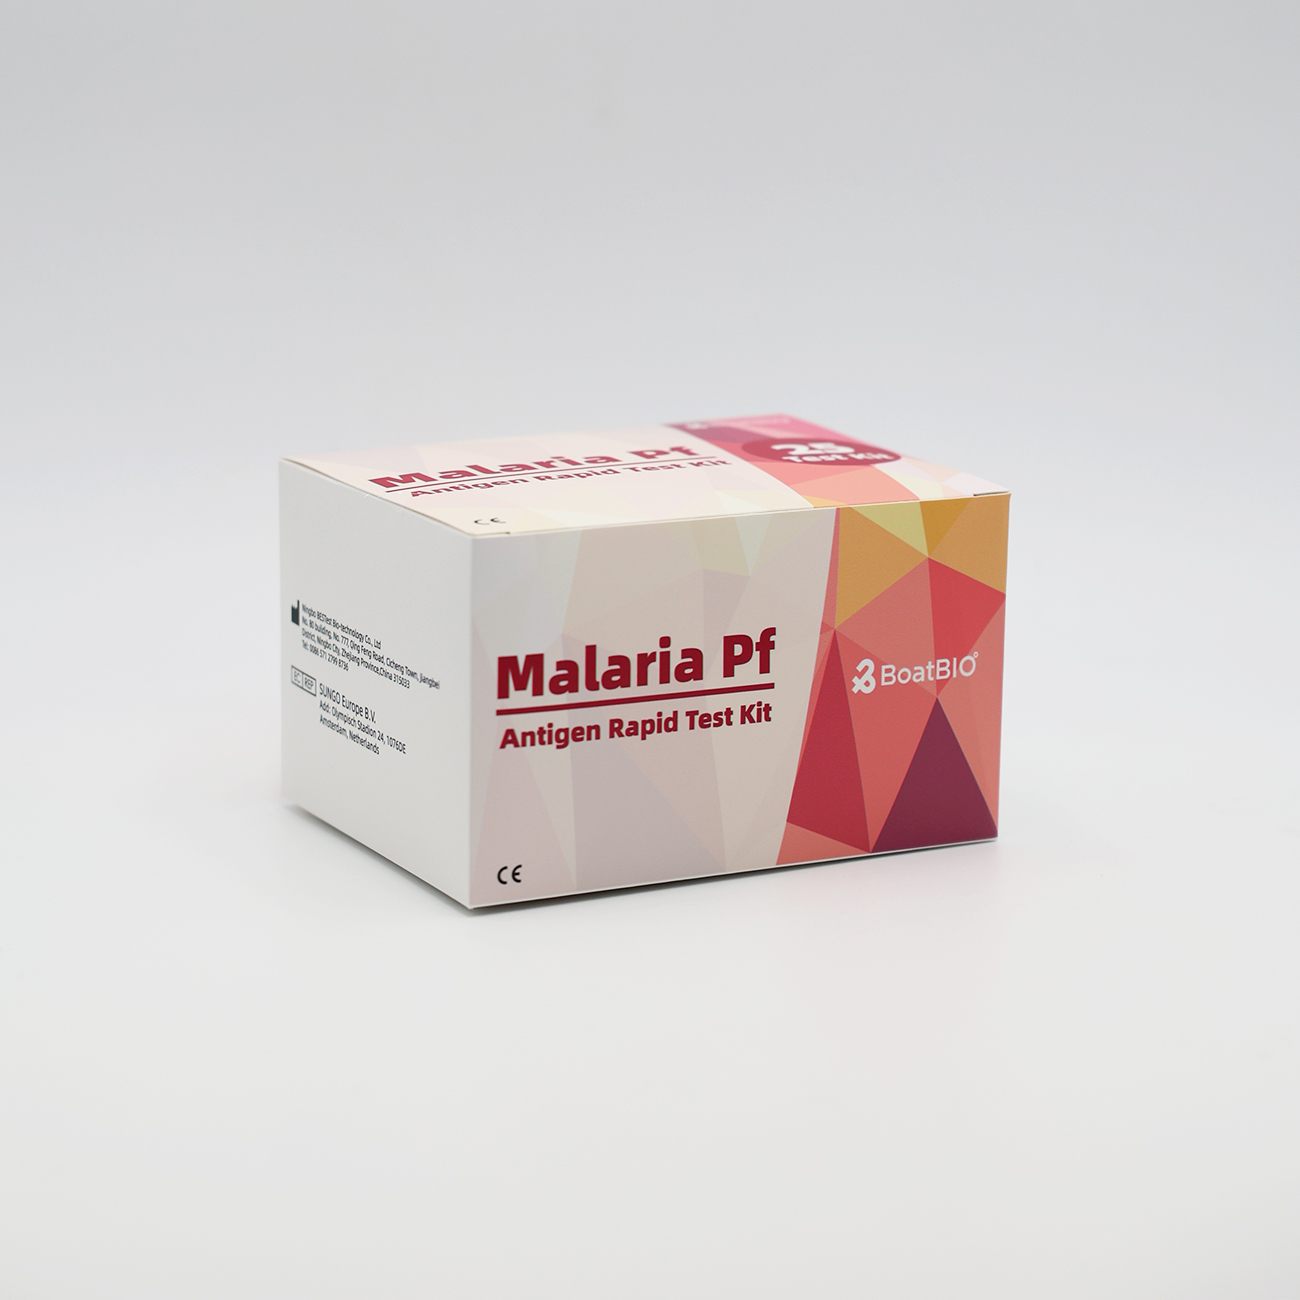 مجموعة اختبار الملاريا Pf Antigen السريع (الذهب الغرواني)